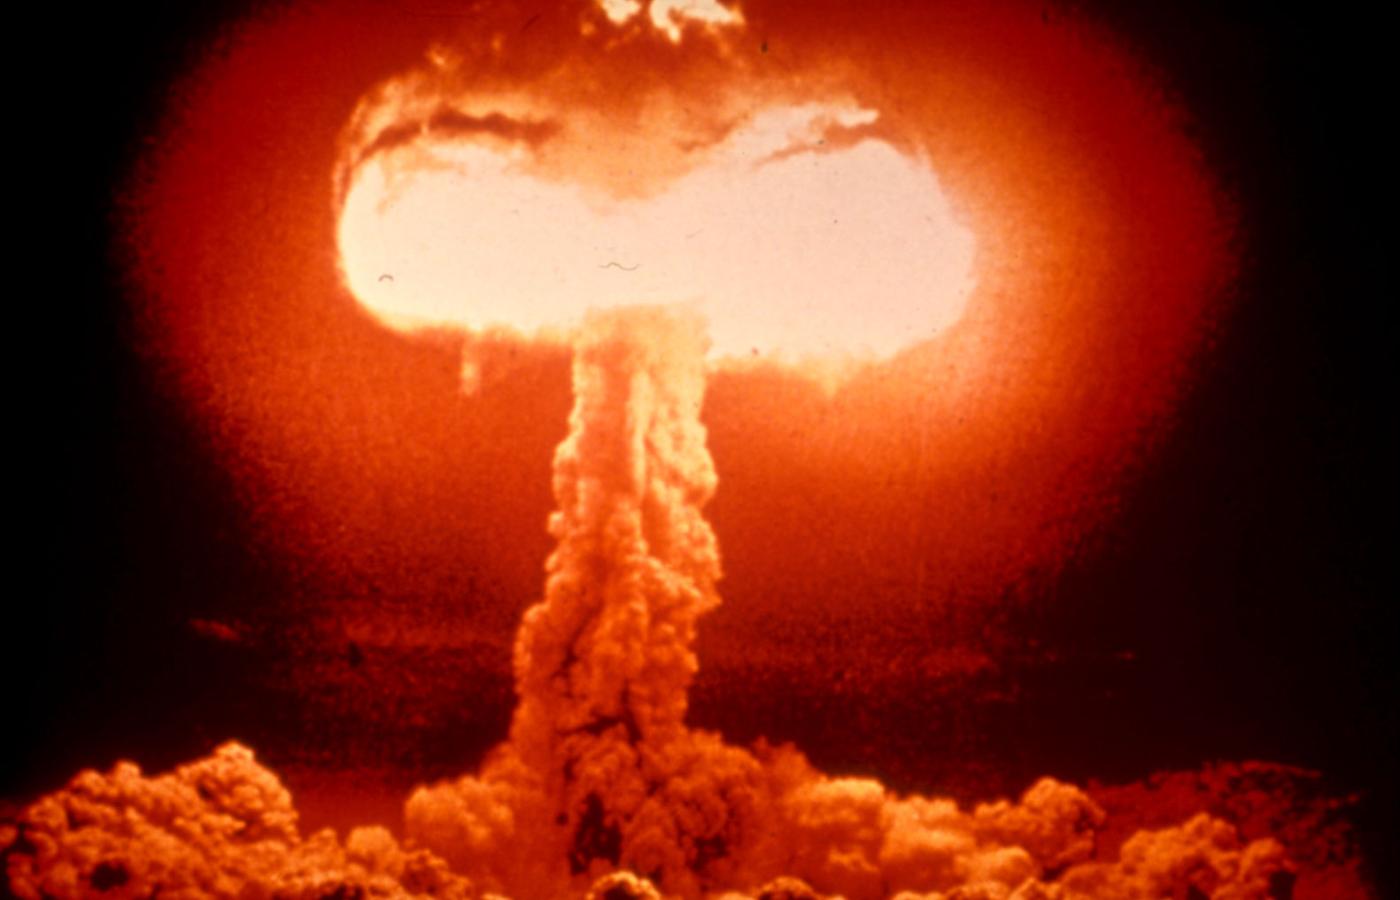 Amerykanie nie zdecydowali się na użycie swojej broni atomowej przeciwko ZSRR w obawie, że ich także może spotkać nuklearna zagłada.